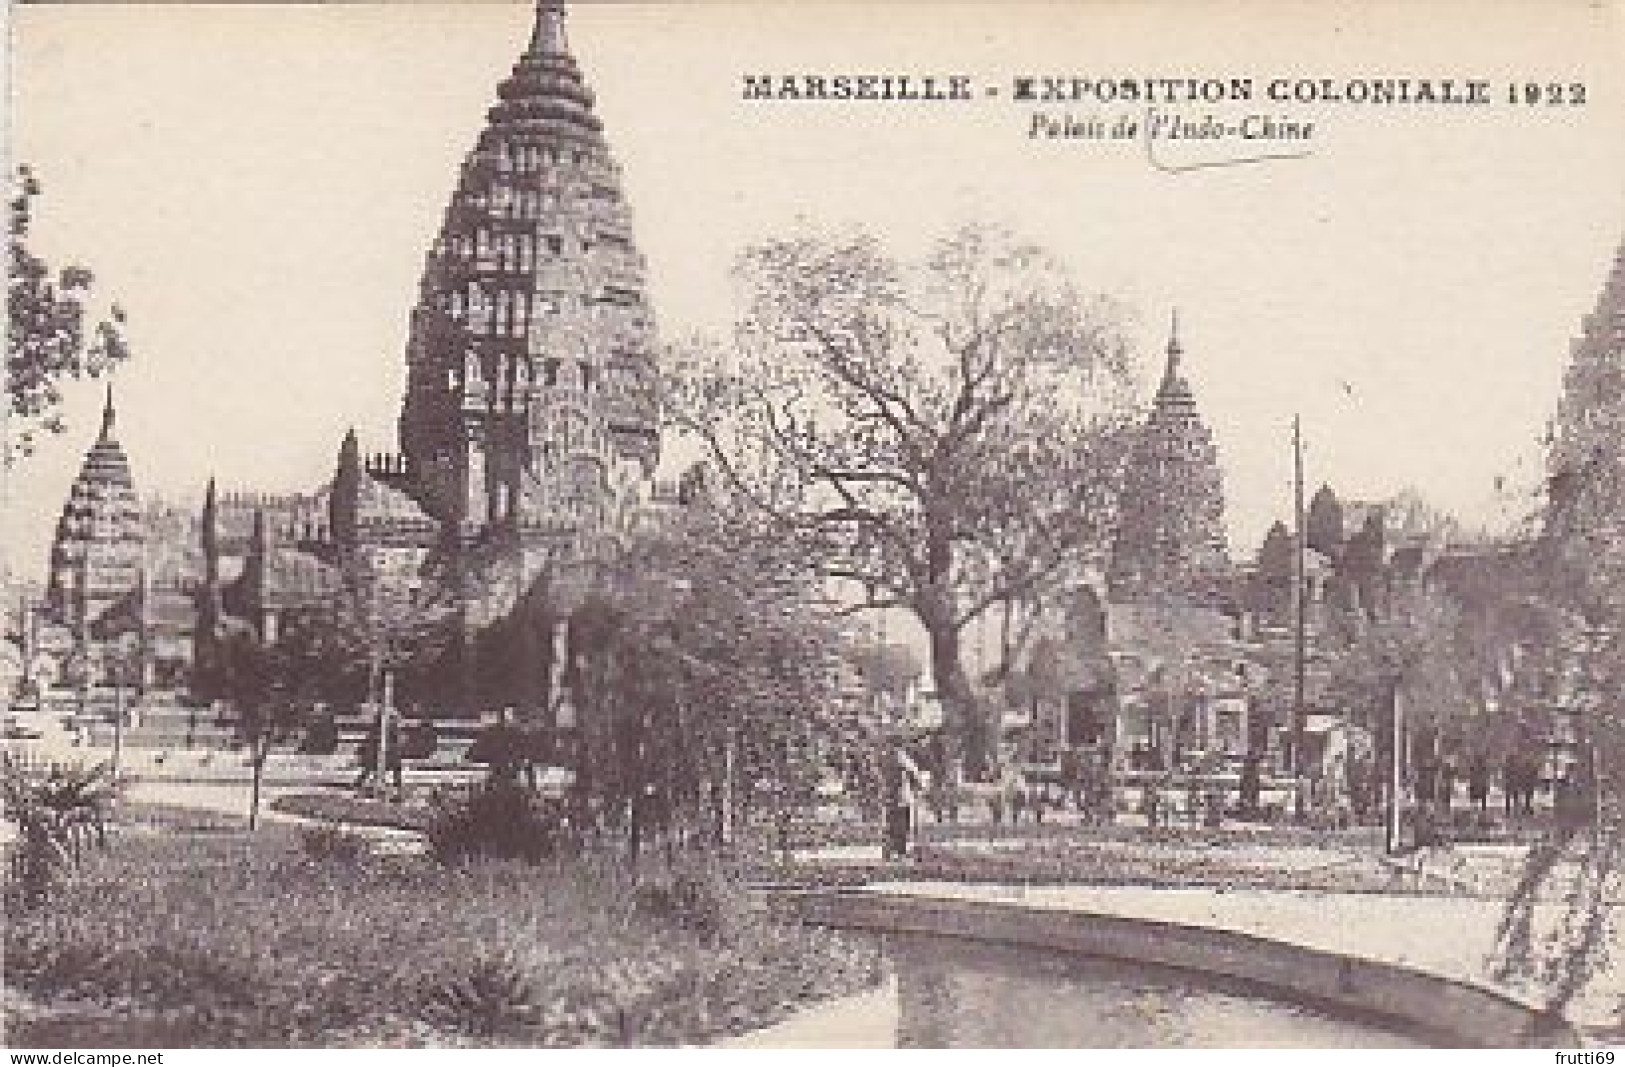 AK 216701 FRANCE - Marseille - Expoition Coloniale 1922 - Palais De L'Indo-Chine - Mostre Coloniali 1906 – 1922